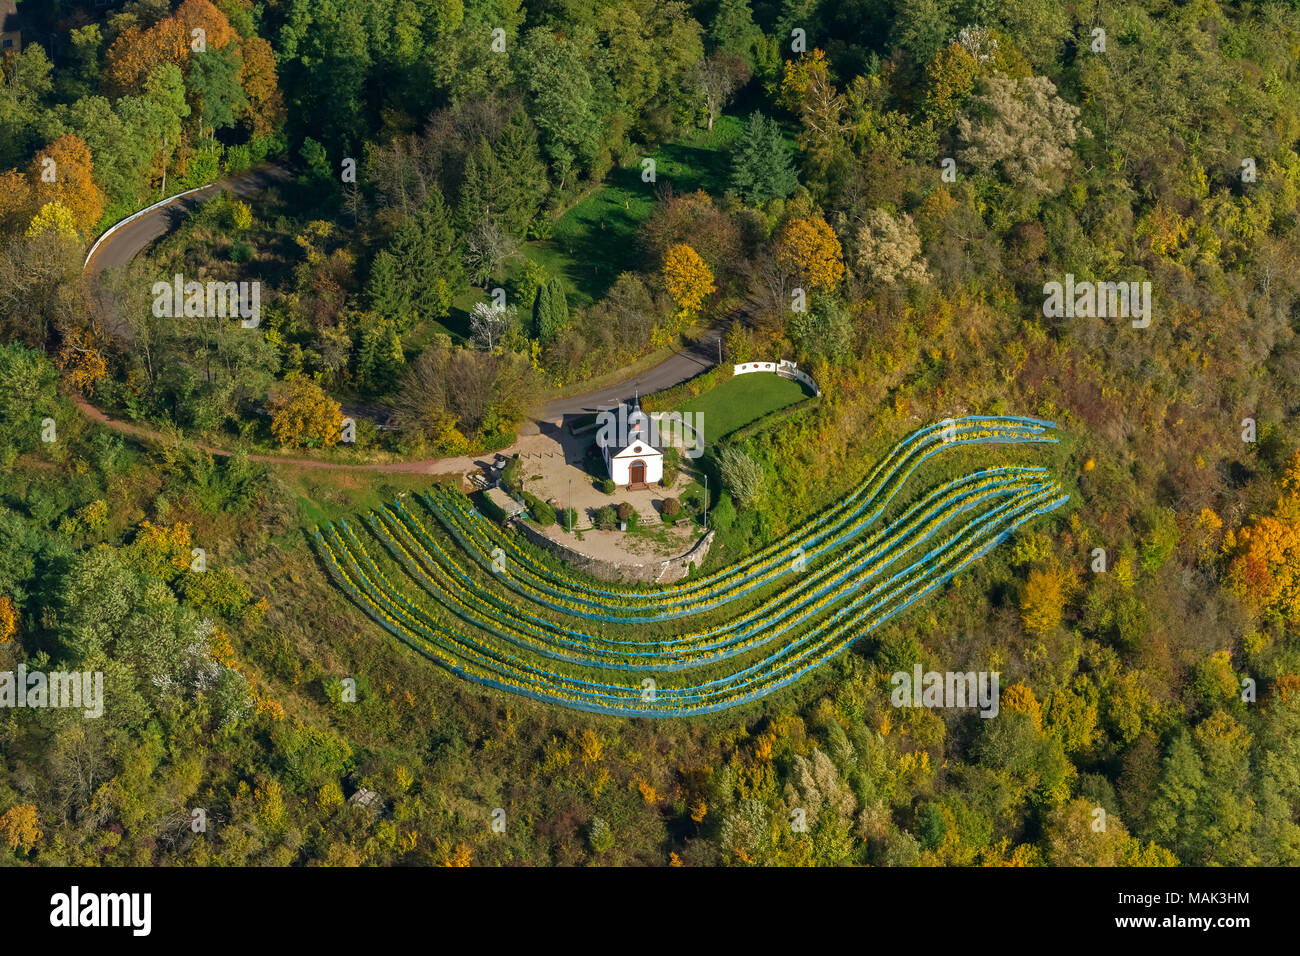 Vista aerea, piccola cappella sul Ellerweg in mezzo a vigneti, autunno, foglie di autunno, Golden ottobre, estate indiana, Merzig, Saarland, Germania, Foto Stock